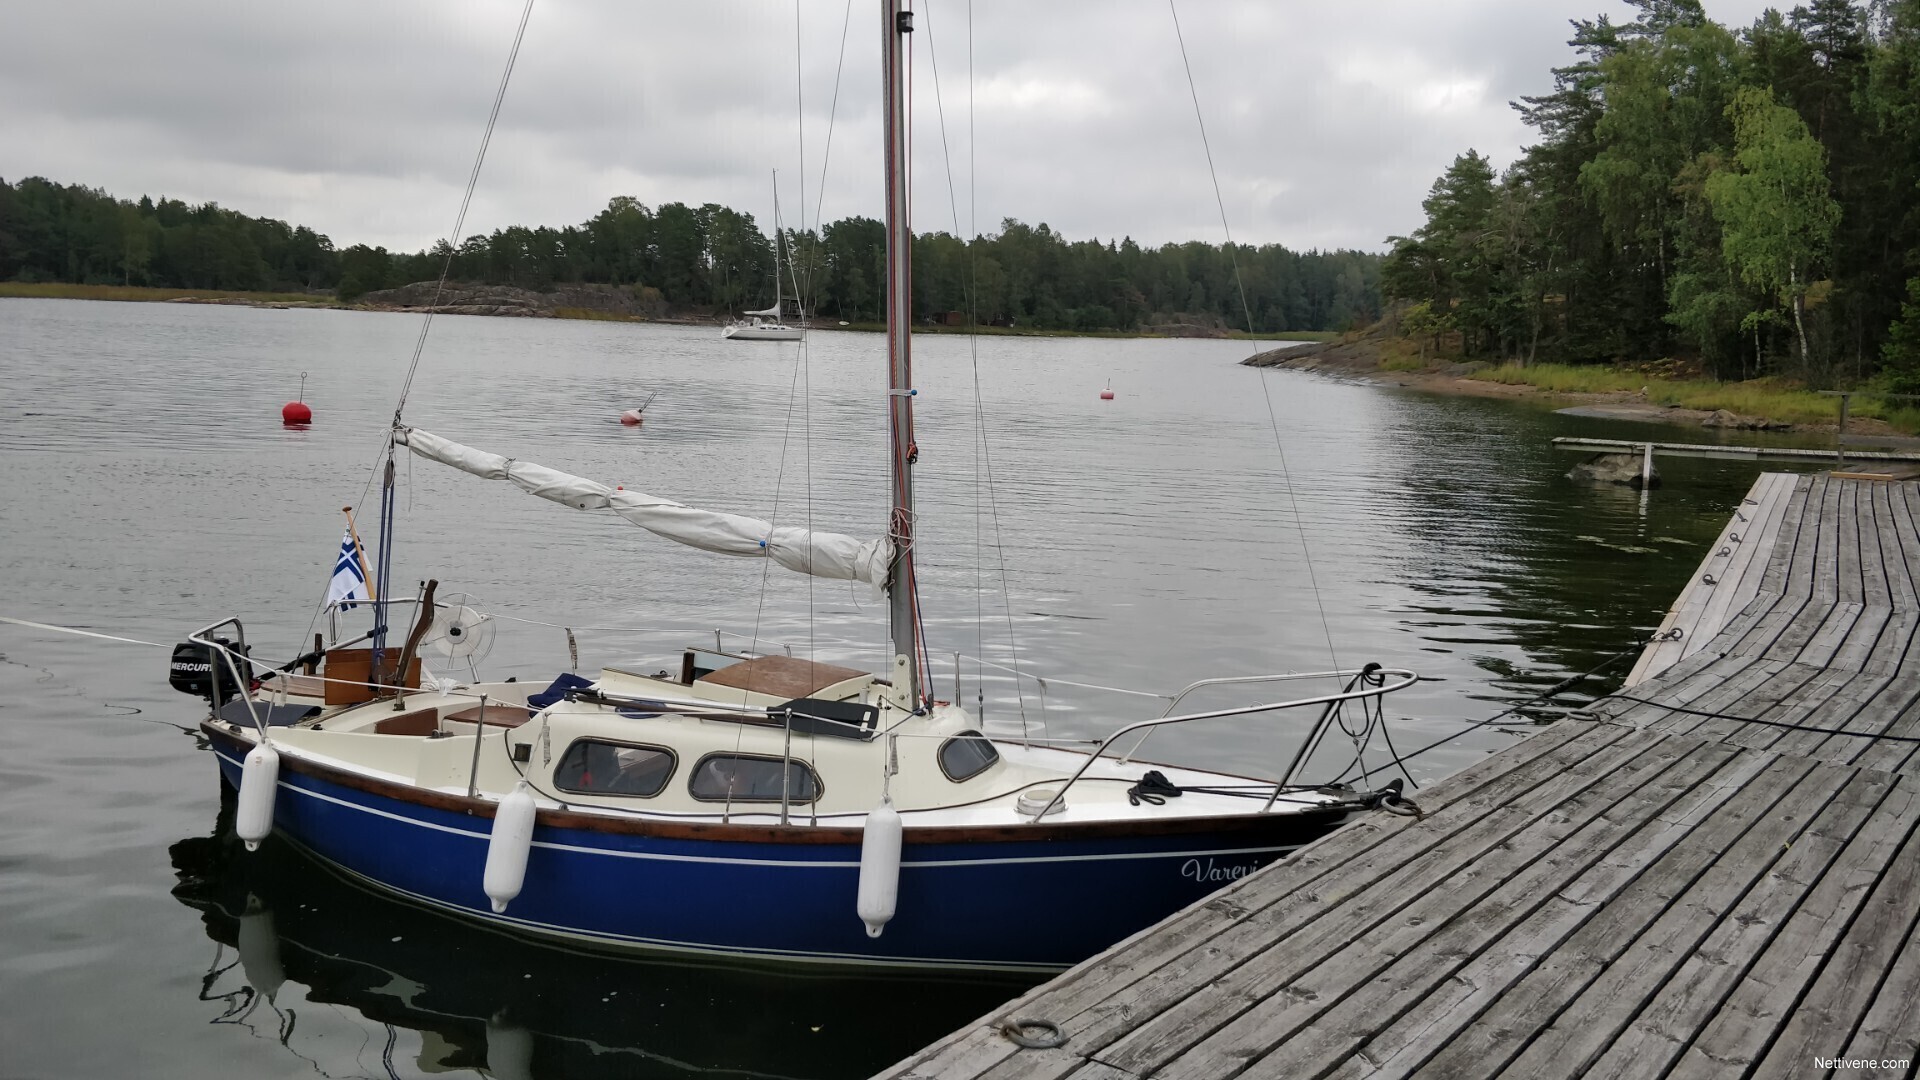 hurley 18 sailboat